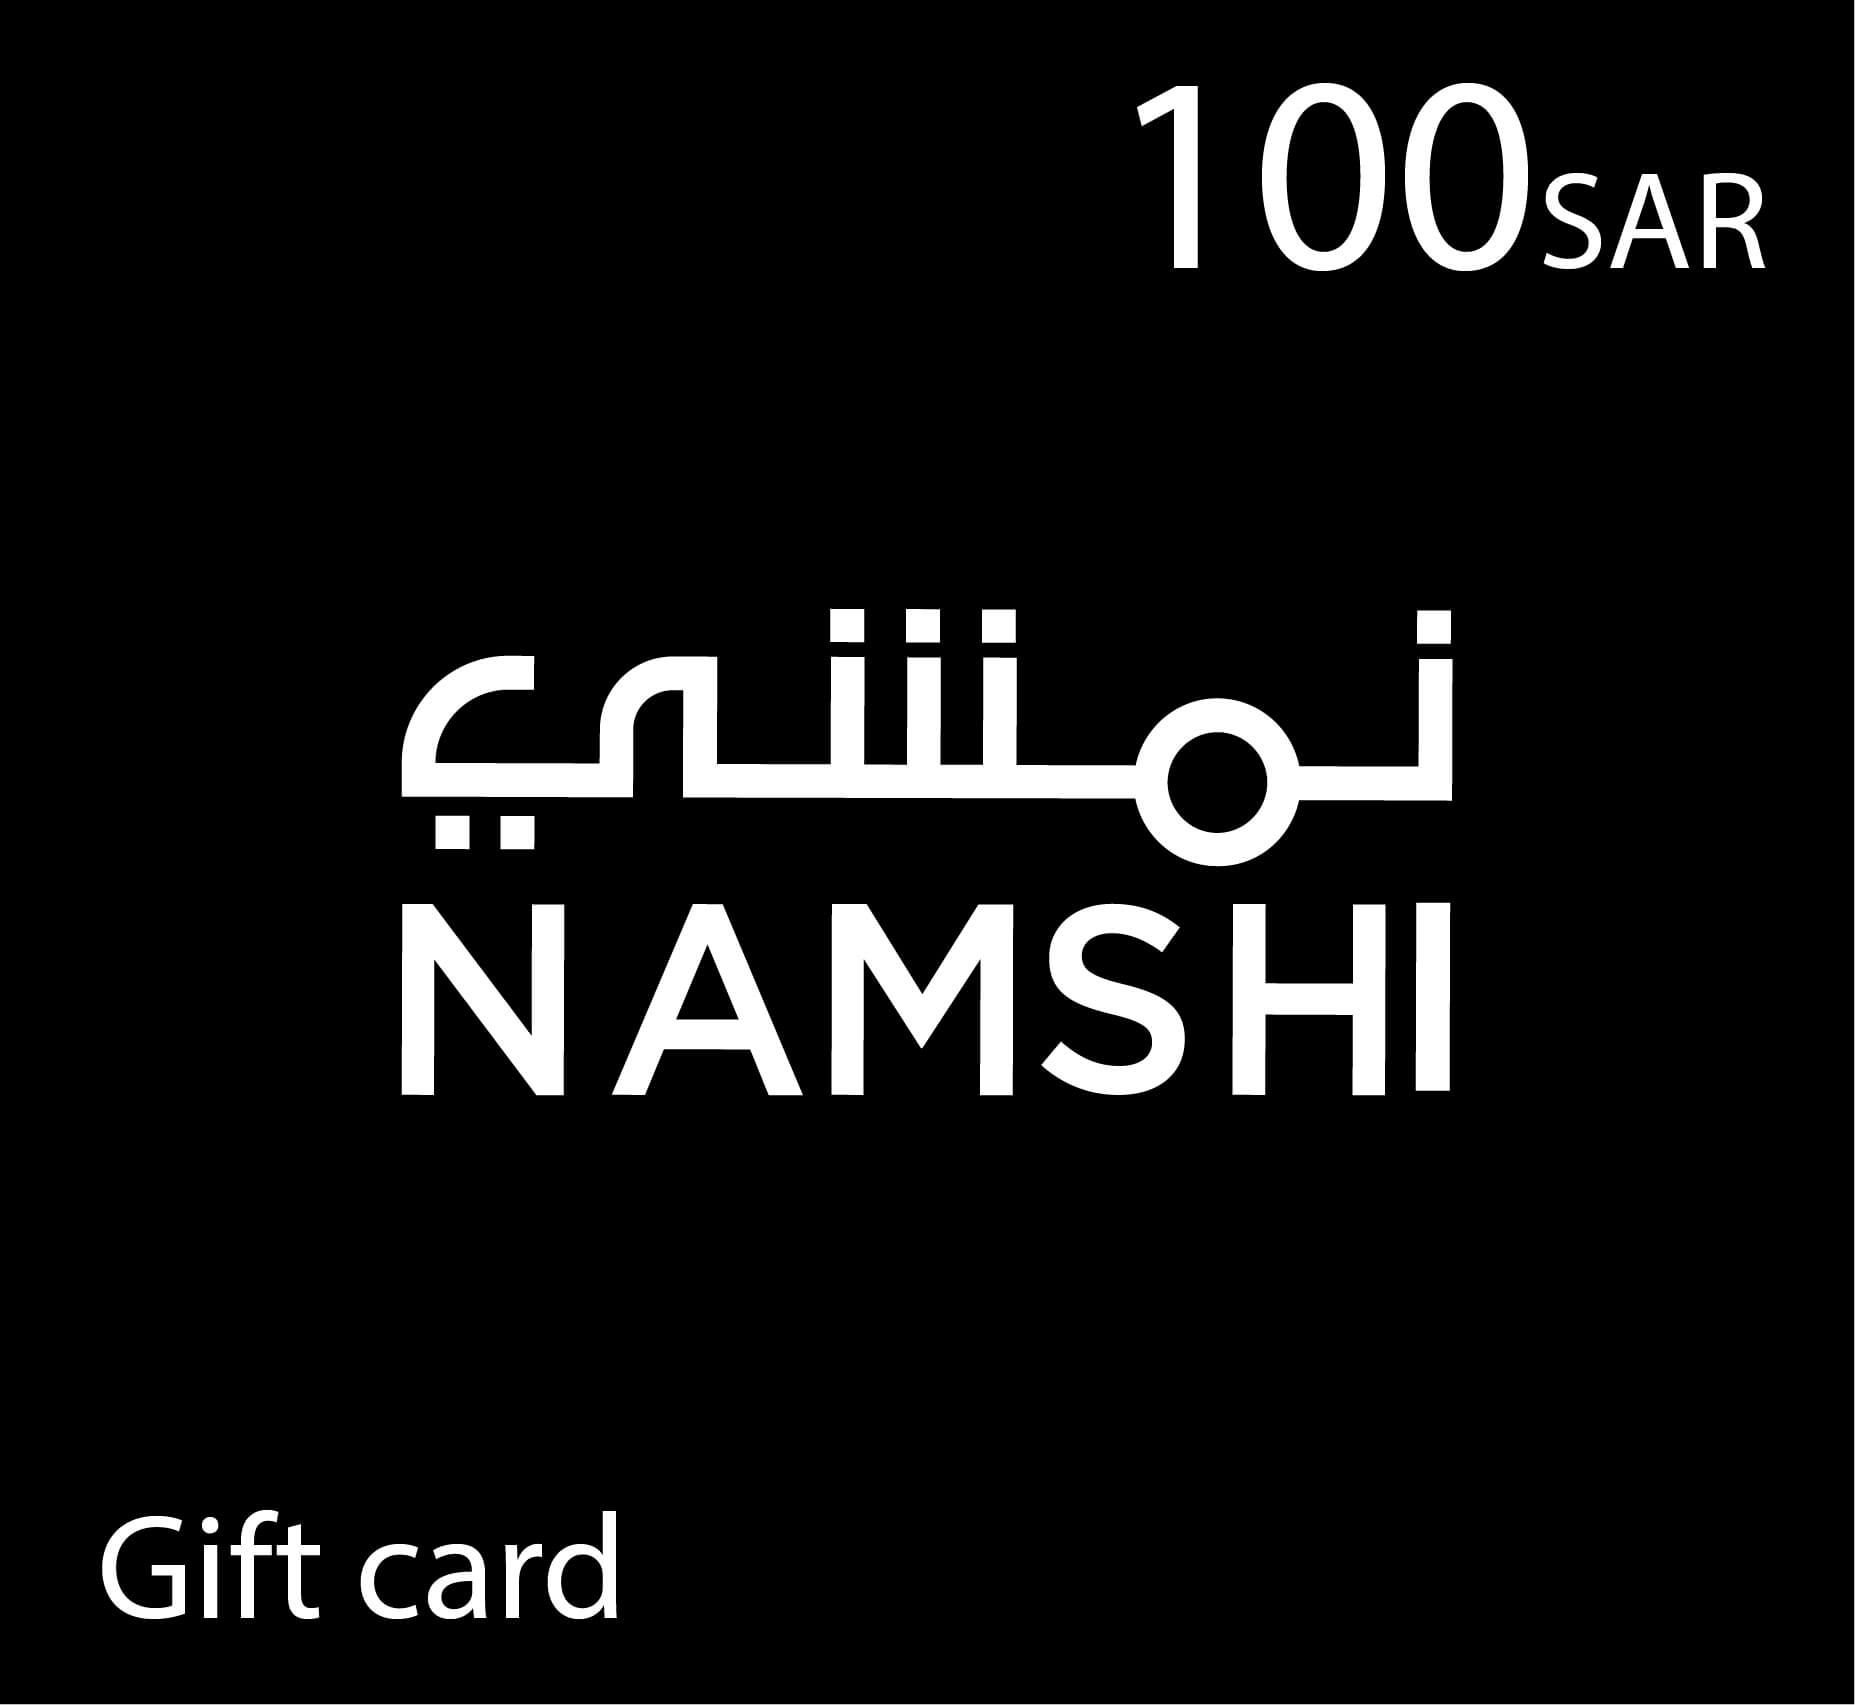 بطاقة هدايا نمشي Namshi - قسيمة شراء نمشي - 100 ريال